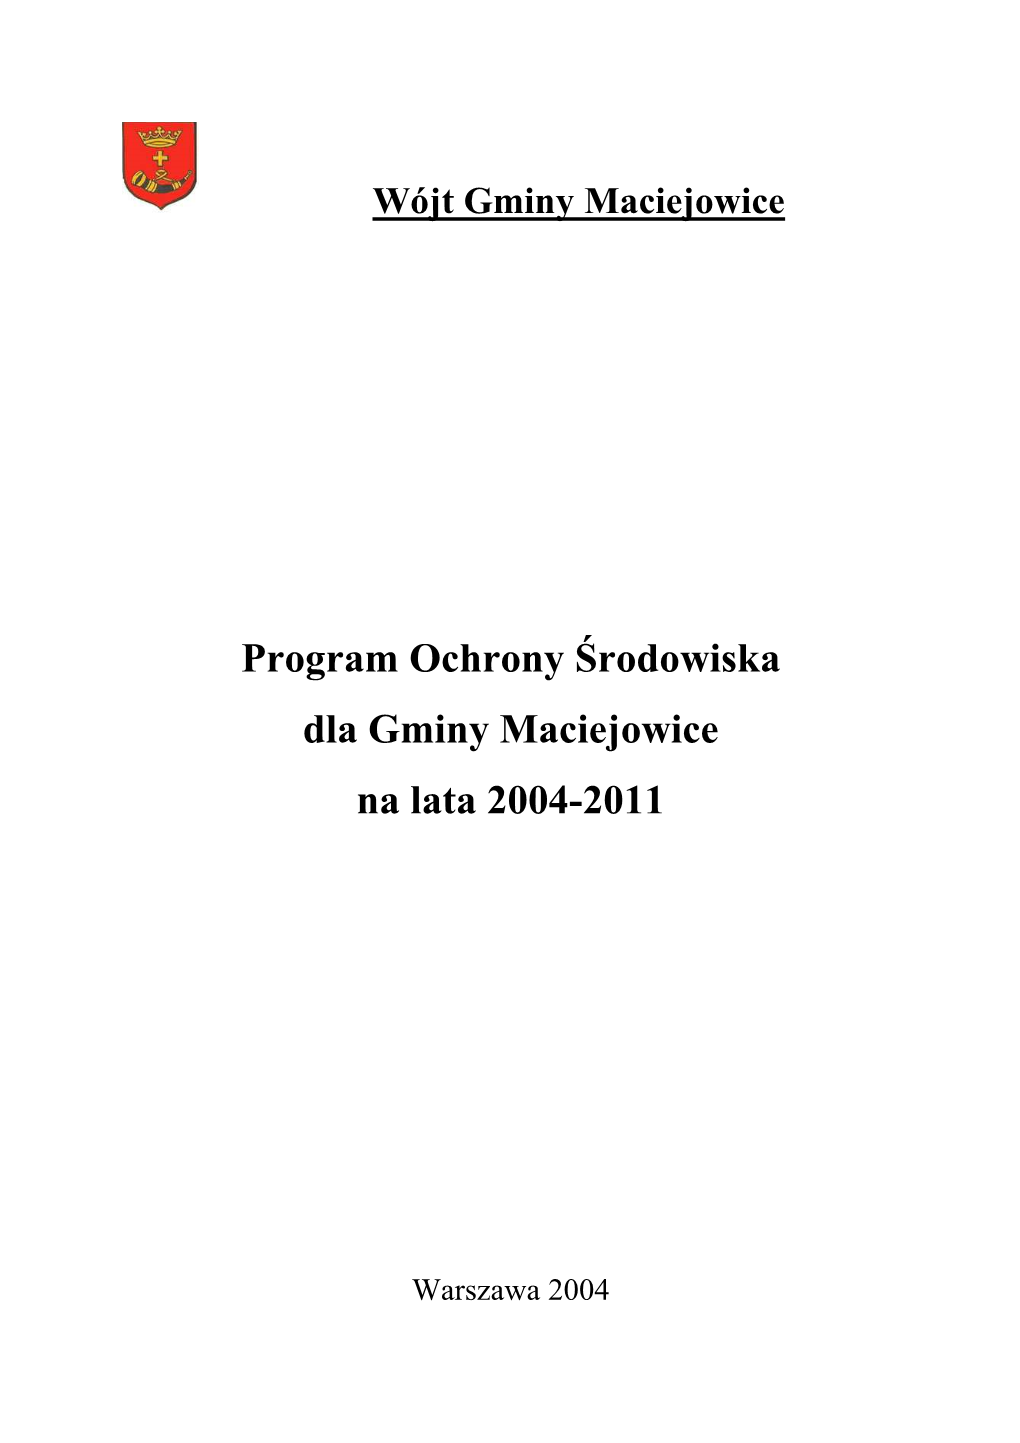 Program Ochrony Środowiska Dla Gminy Maciejowice Na Lata 2004-2011